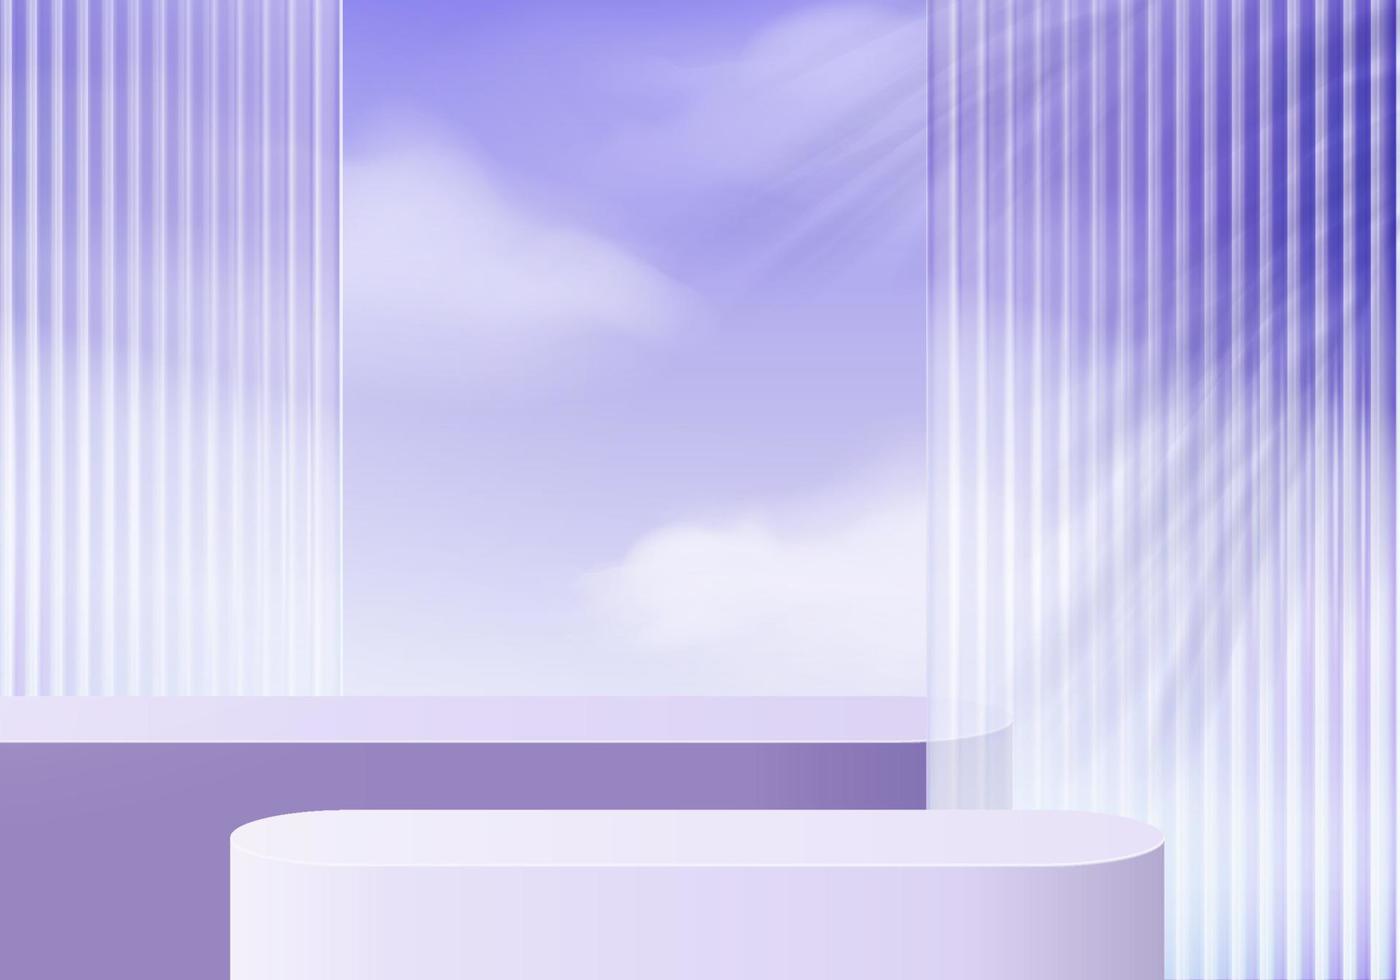 Plate-forme de fond 3D avec verre violet dans le nuage. vecteur de fond plate-forme de podium en cristal de rendu 3d. stand show produit cosmétique. vitrine de scène sur piédestal plate-forme de studio de verre moderne